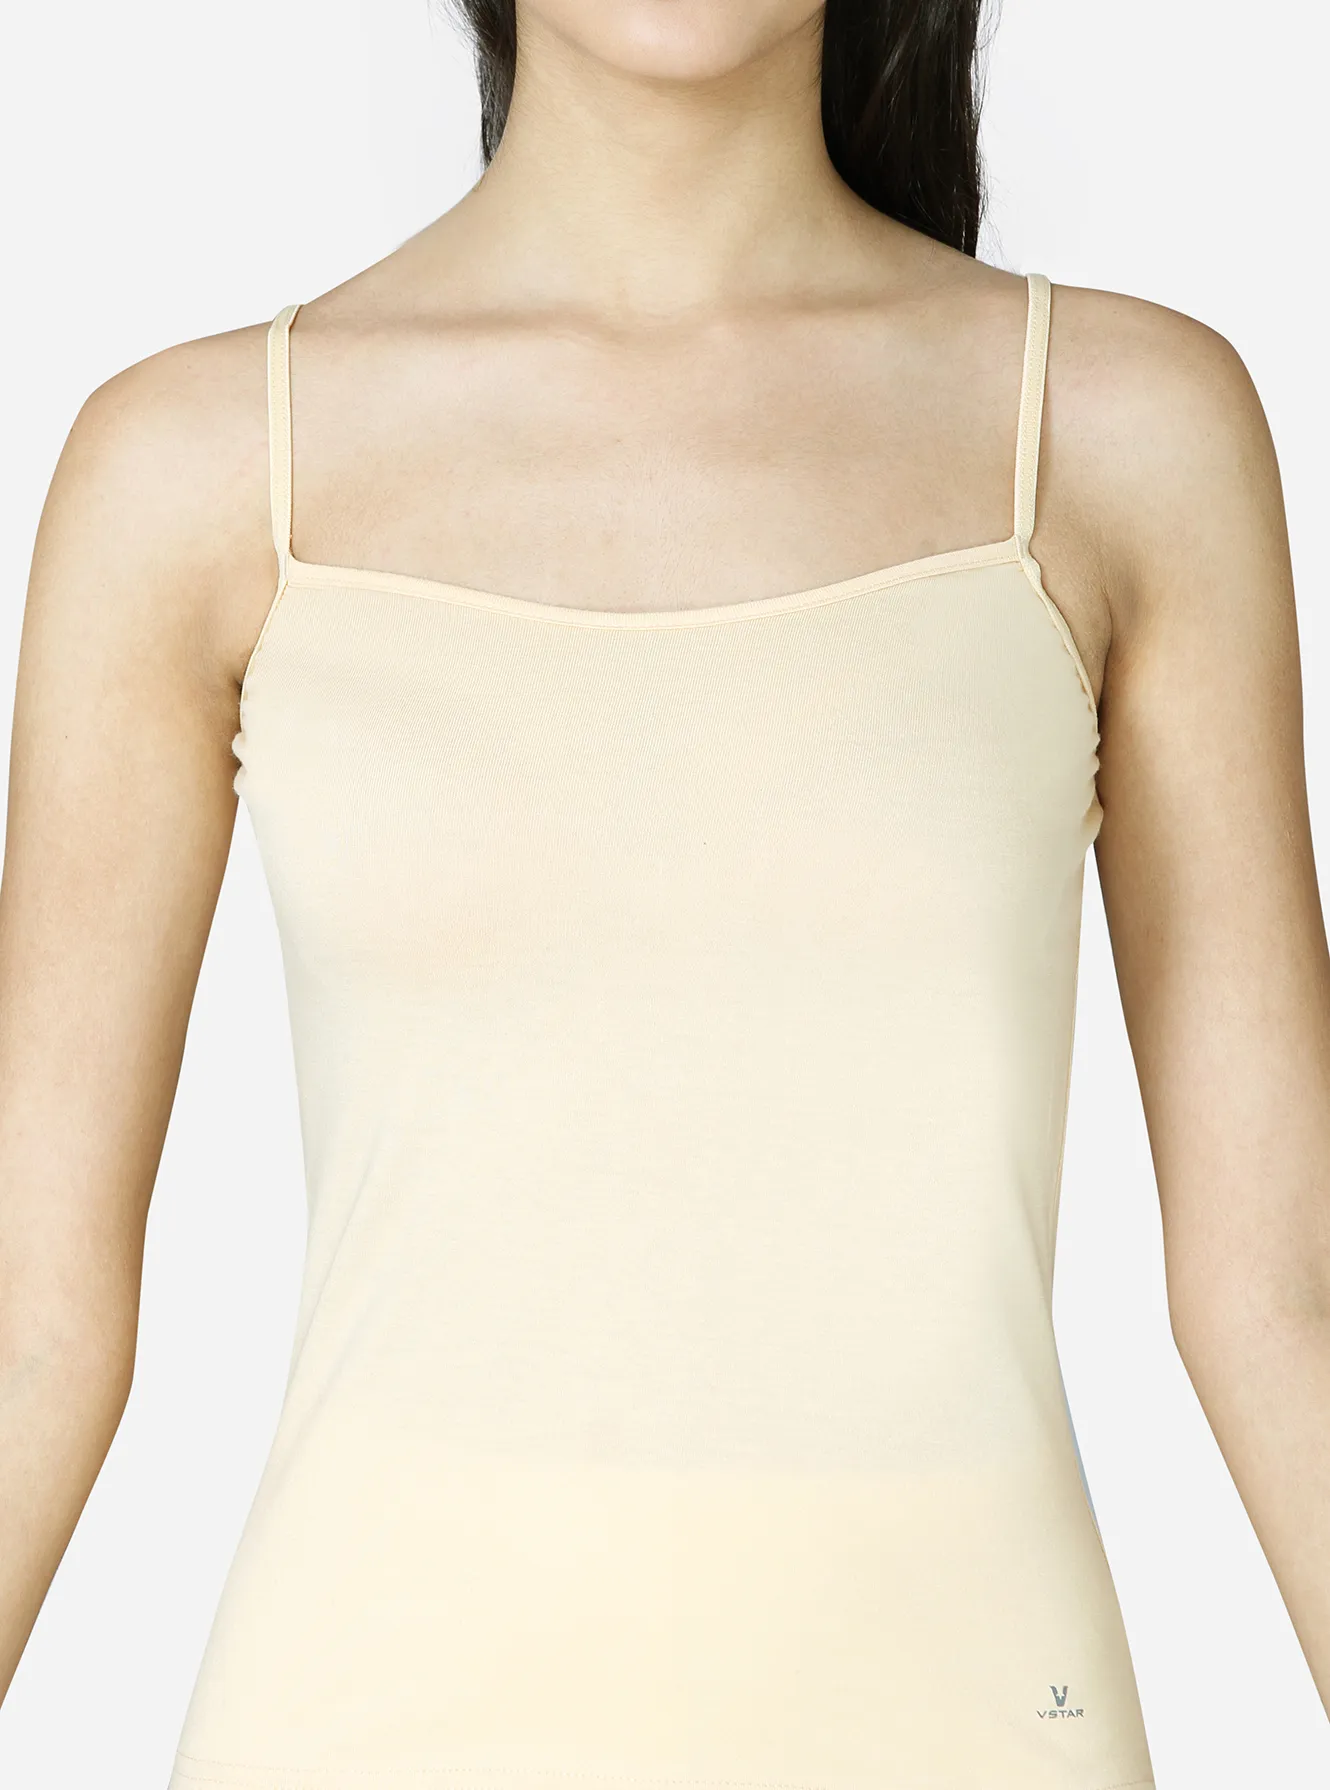 Deep neckline modern fit cotton camisole with adjustable straps